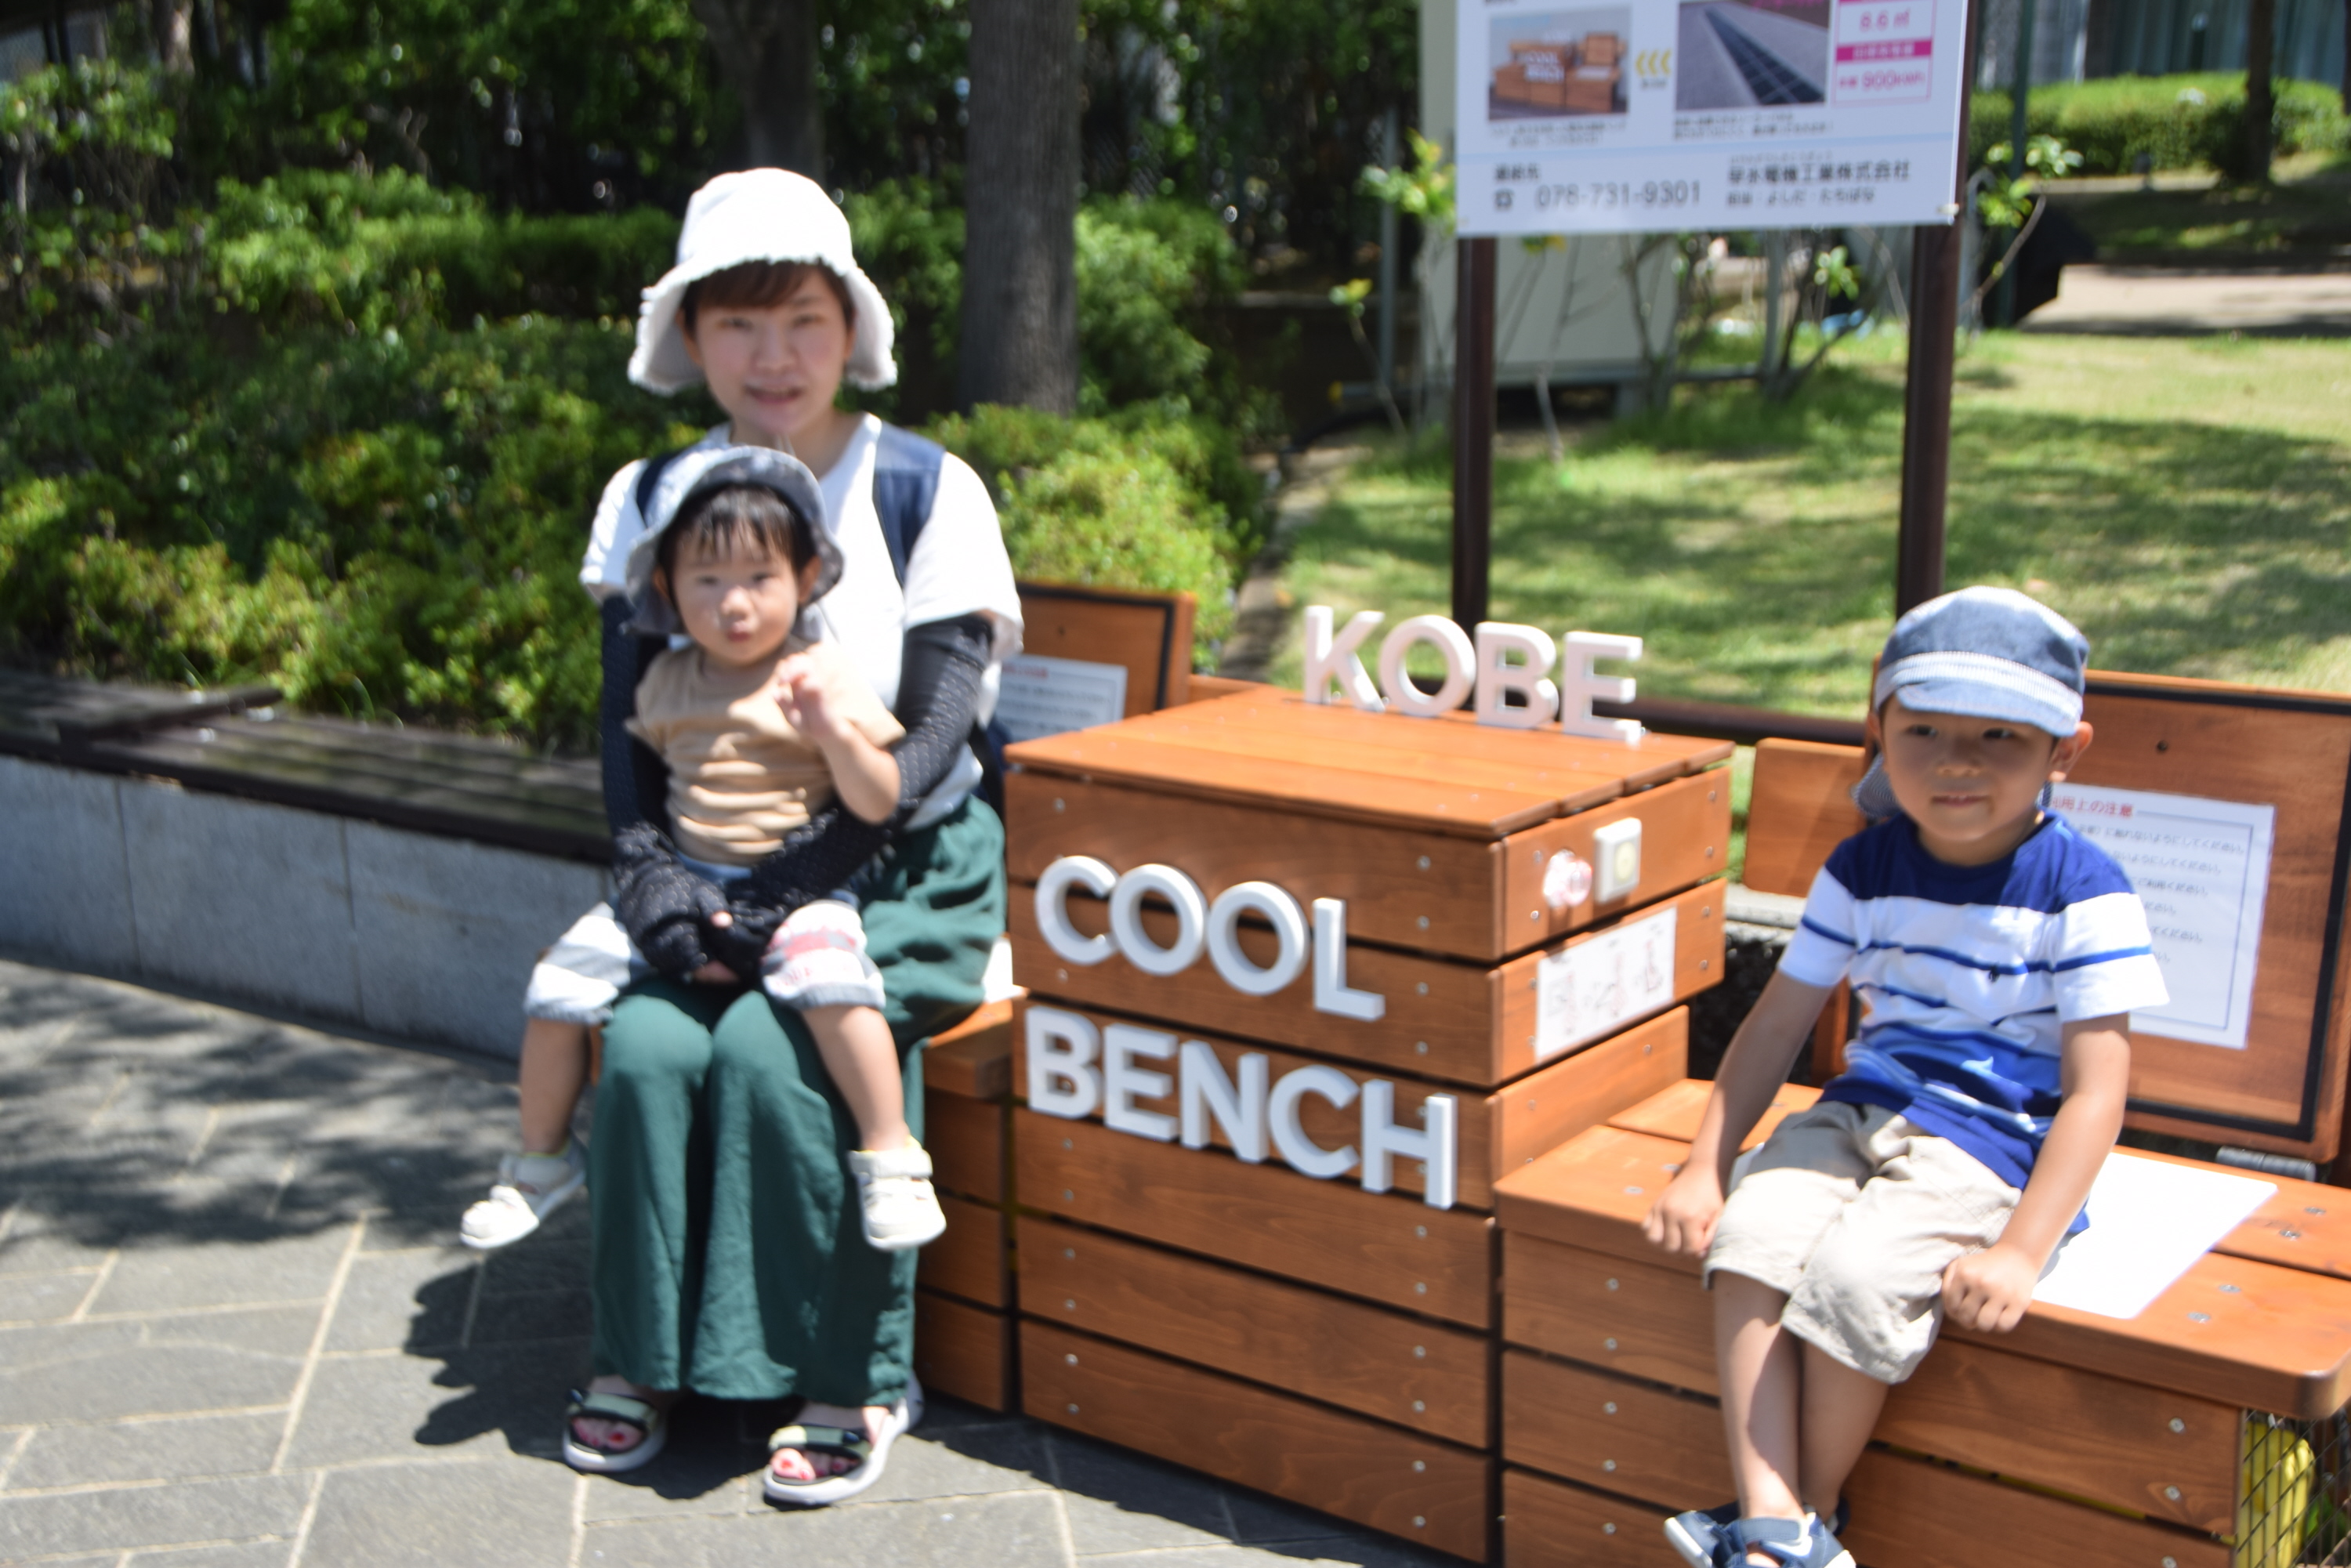 冷たい座面で涼しく 神戸にクールベンチ ９月下旬まで - 産経ニュース